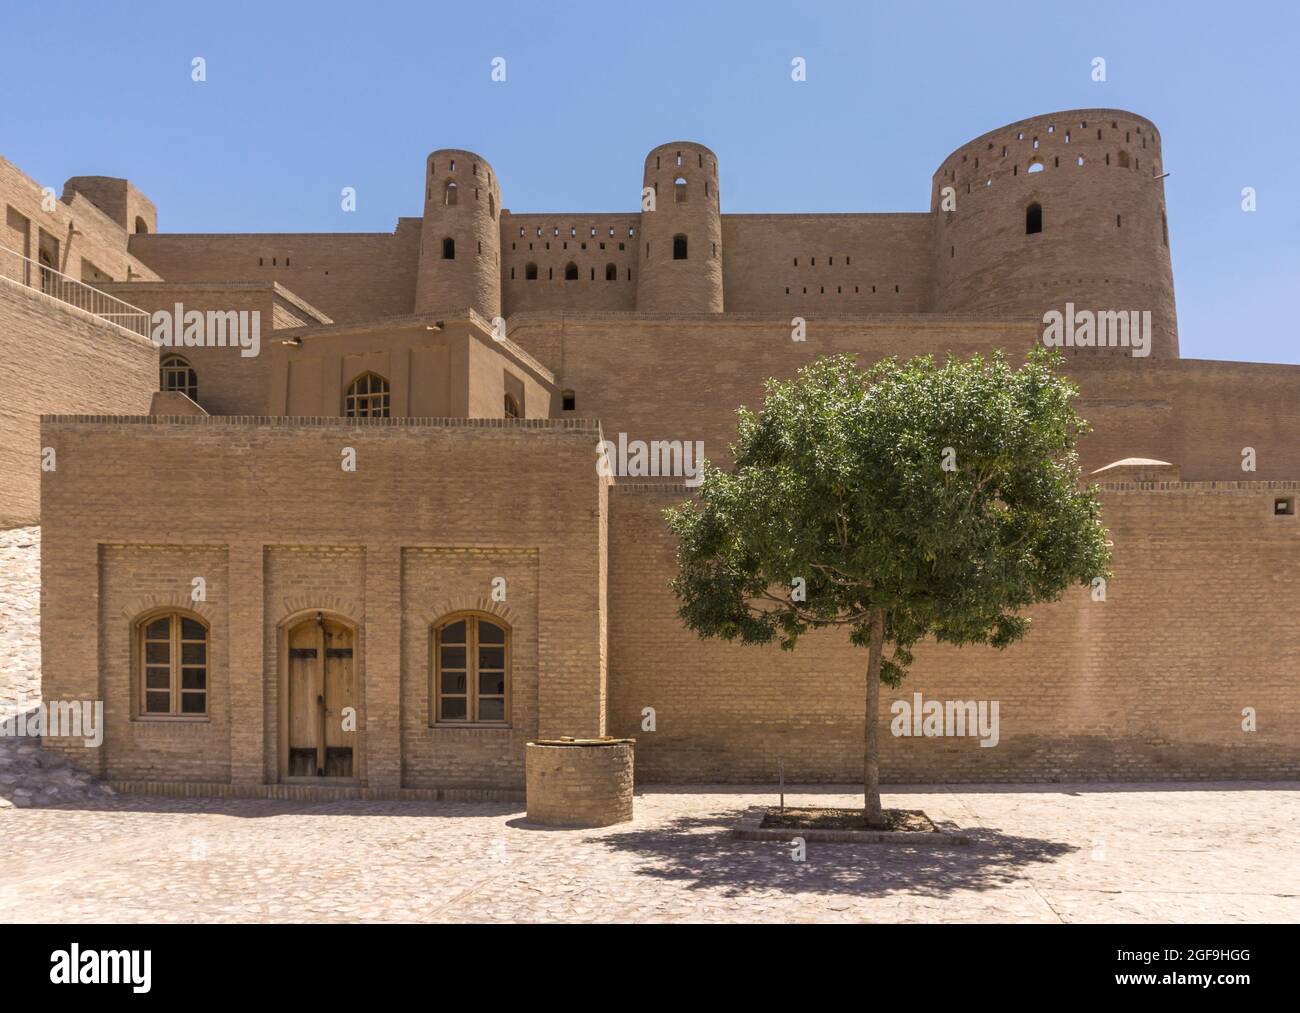 Citadel of Alexander in Herat, Afghanistan Stock Photo